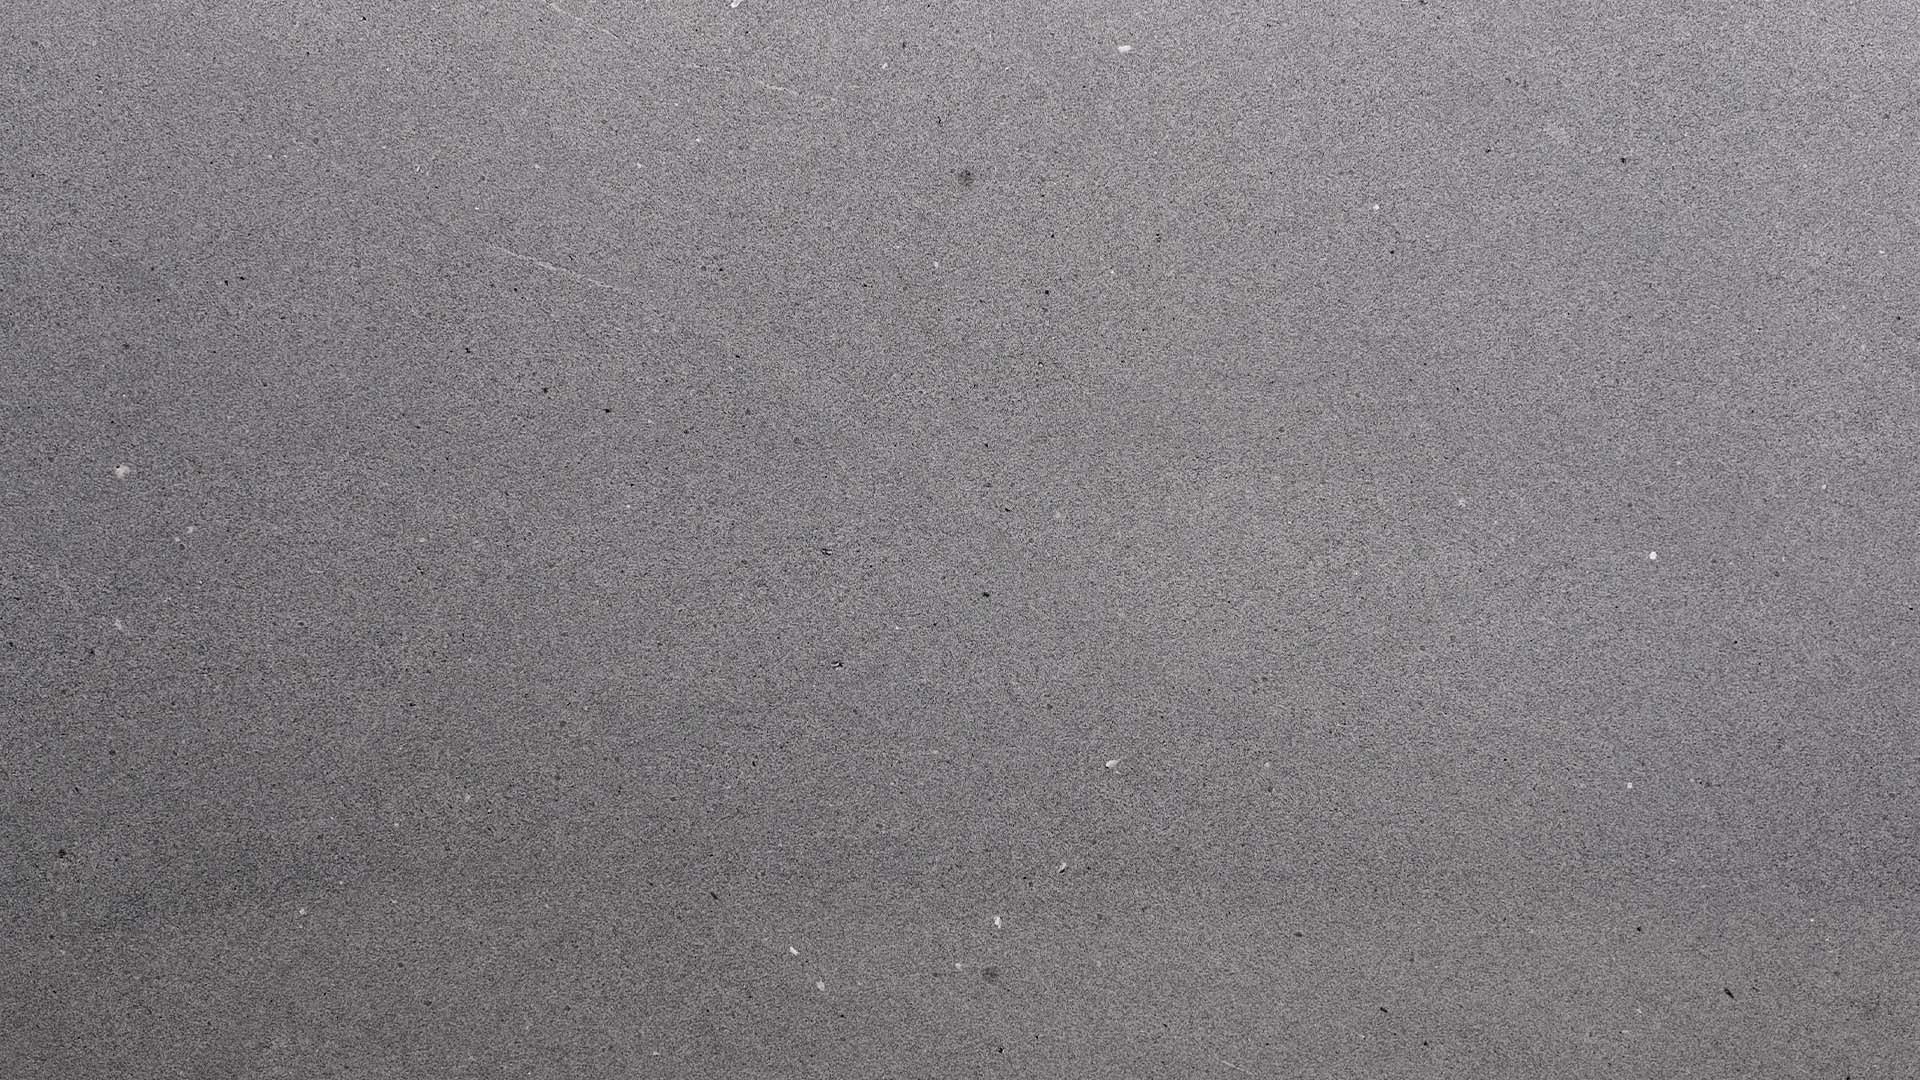 Naturstein Küchenarbeitsplatte in grauem Gruntnon und minimalistischer Maserung in weiss-grau-schwarz und allgemein sehr feiner, matter Oberflächenoptik in der Farbe Mühltalsee.